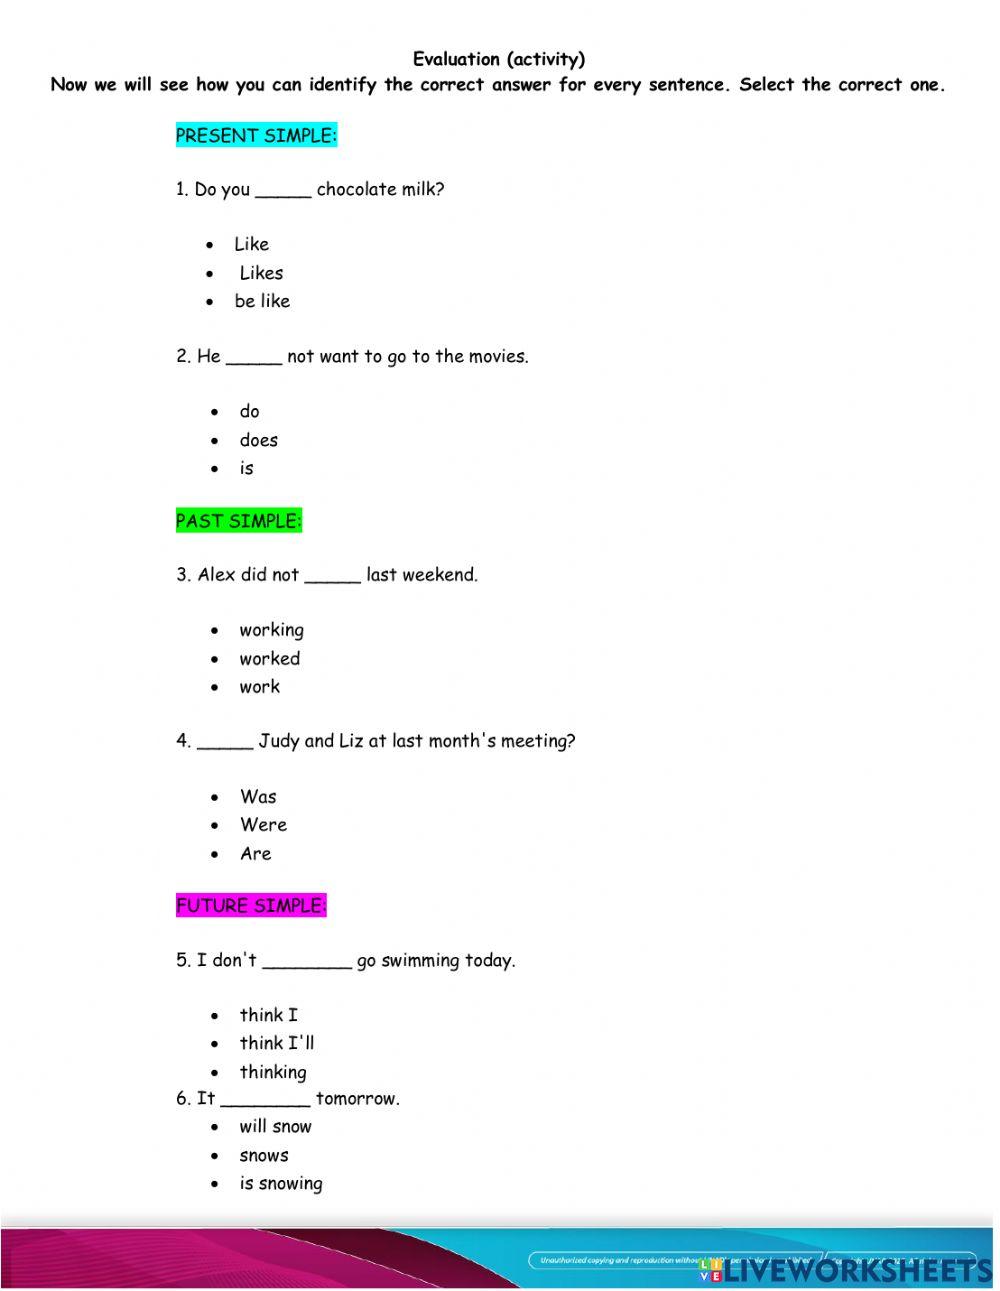 Analog Worksheet (to print)